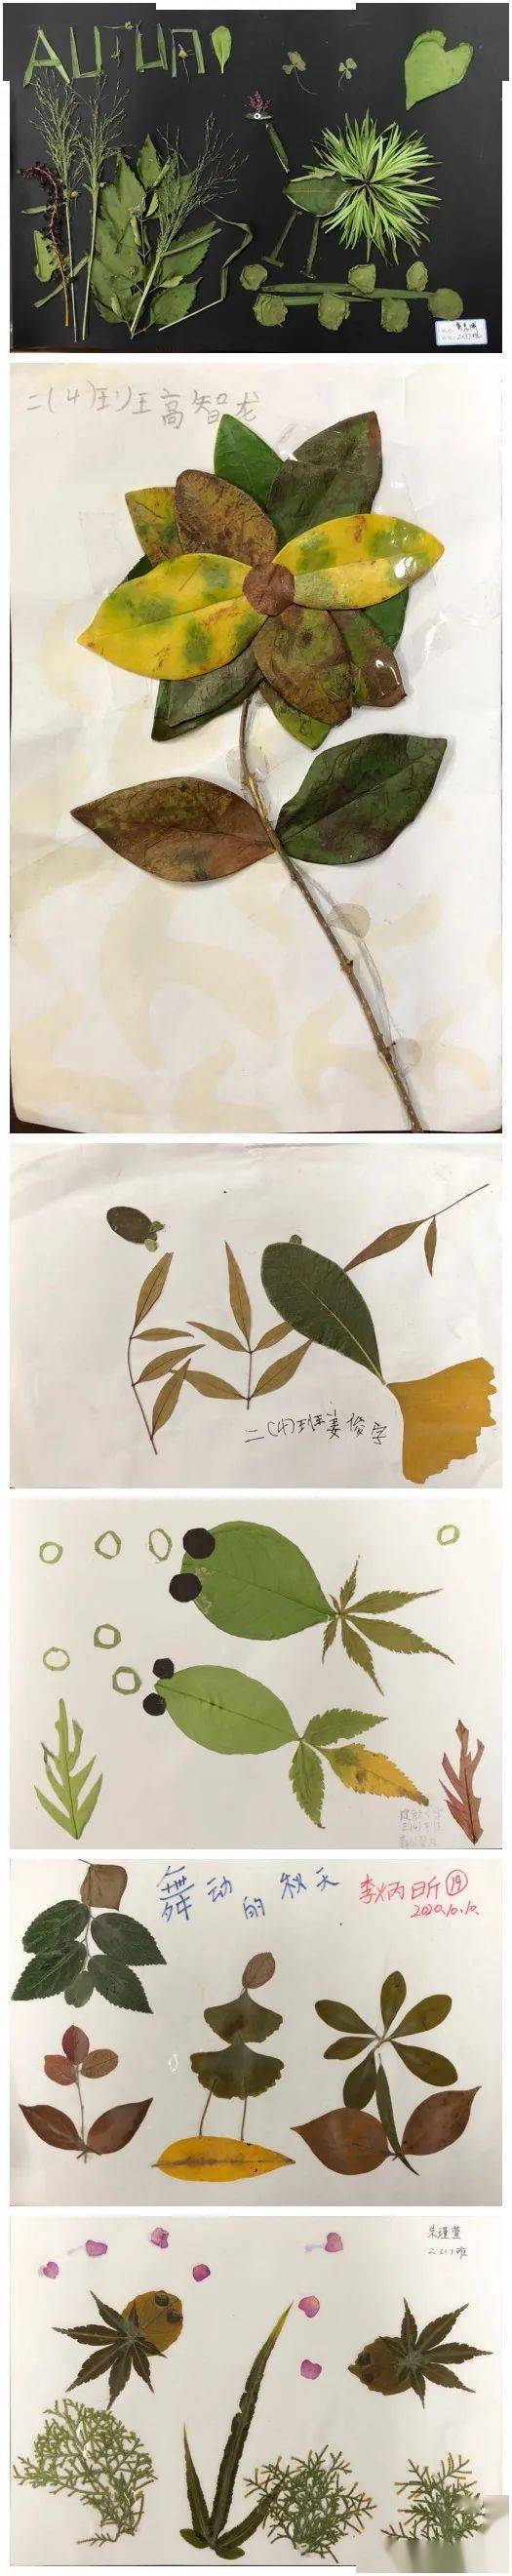 建新小学公民节:树叶贴画参展作品欣赏(二)